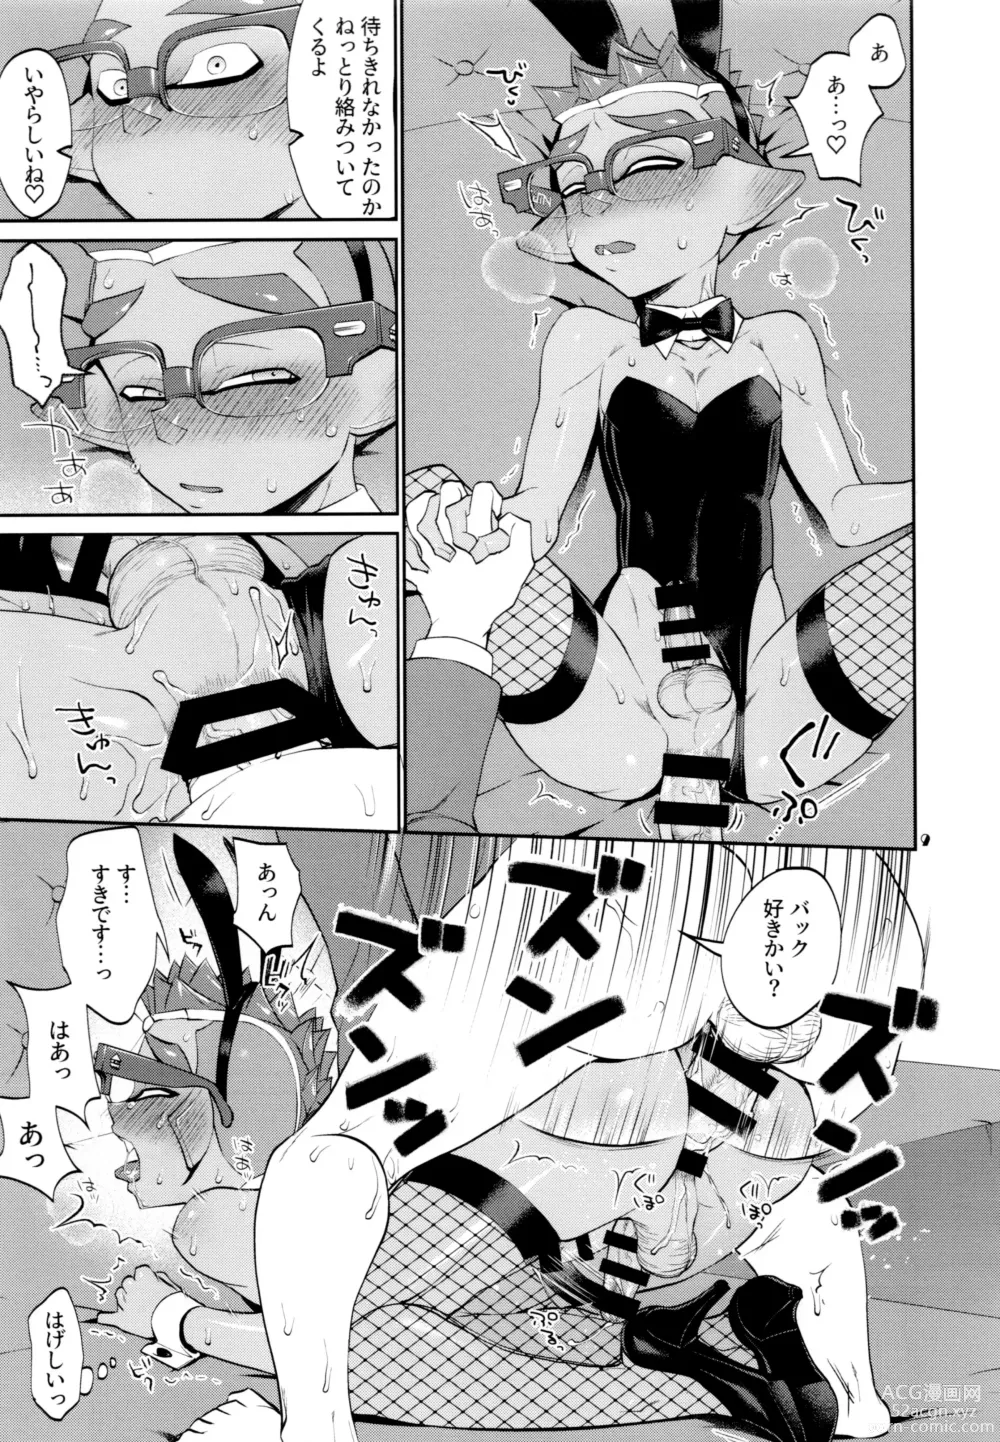 Page 9 of doujinshi Bunny no Ikagawashii Omise